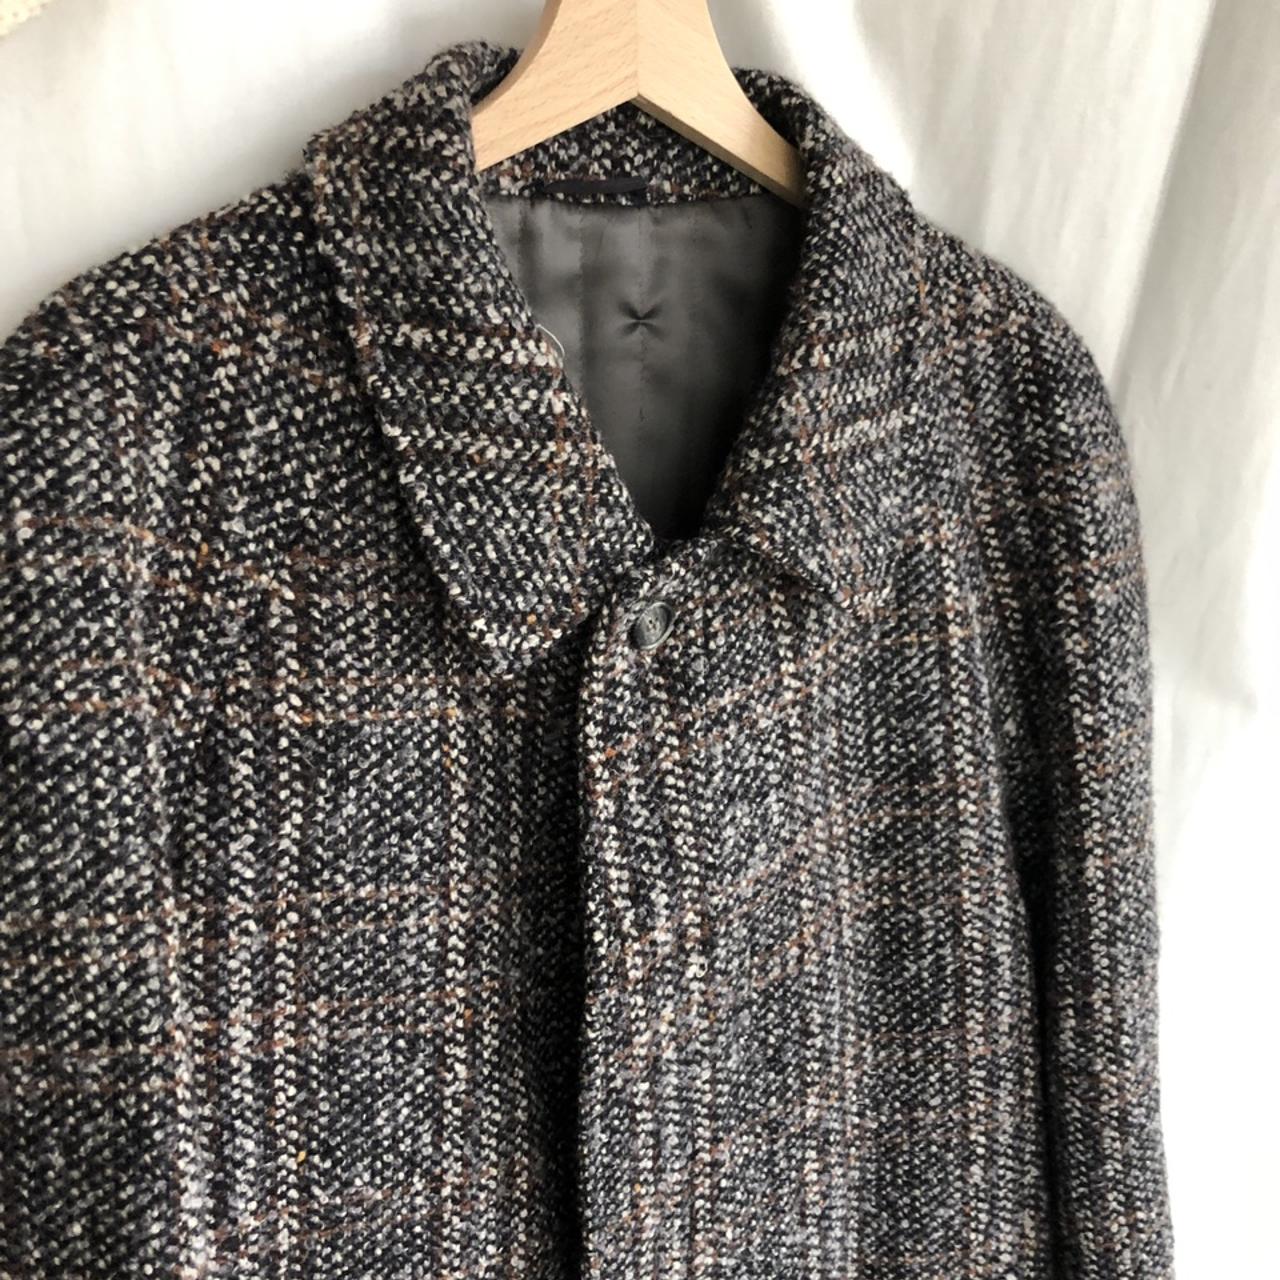 Cappotto vintage lungo da uomo. 100% lana grigio,... - Depop